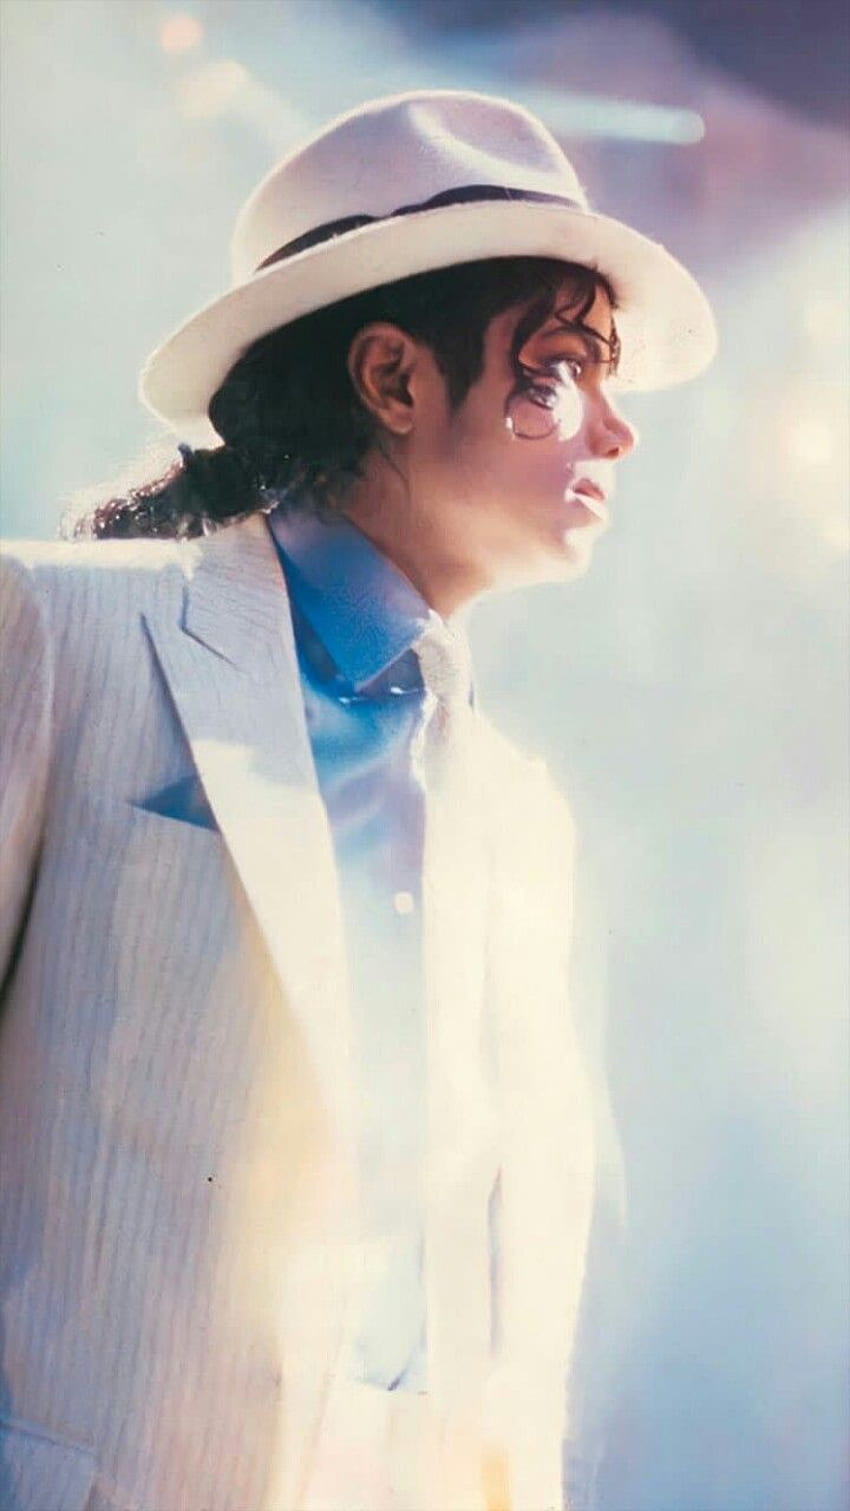 Un ángel descubierto por renaataa. Michael jackson smooth criminal, cartel de Michael jackson, sonrisa de Michael jackson, Michael Jackson Smooth Criminal fondo de pantalla del teléfono